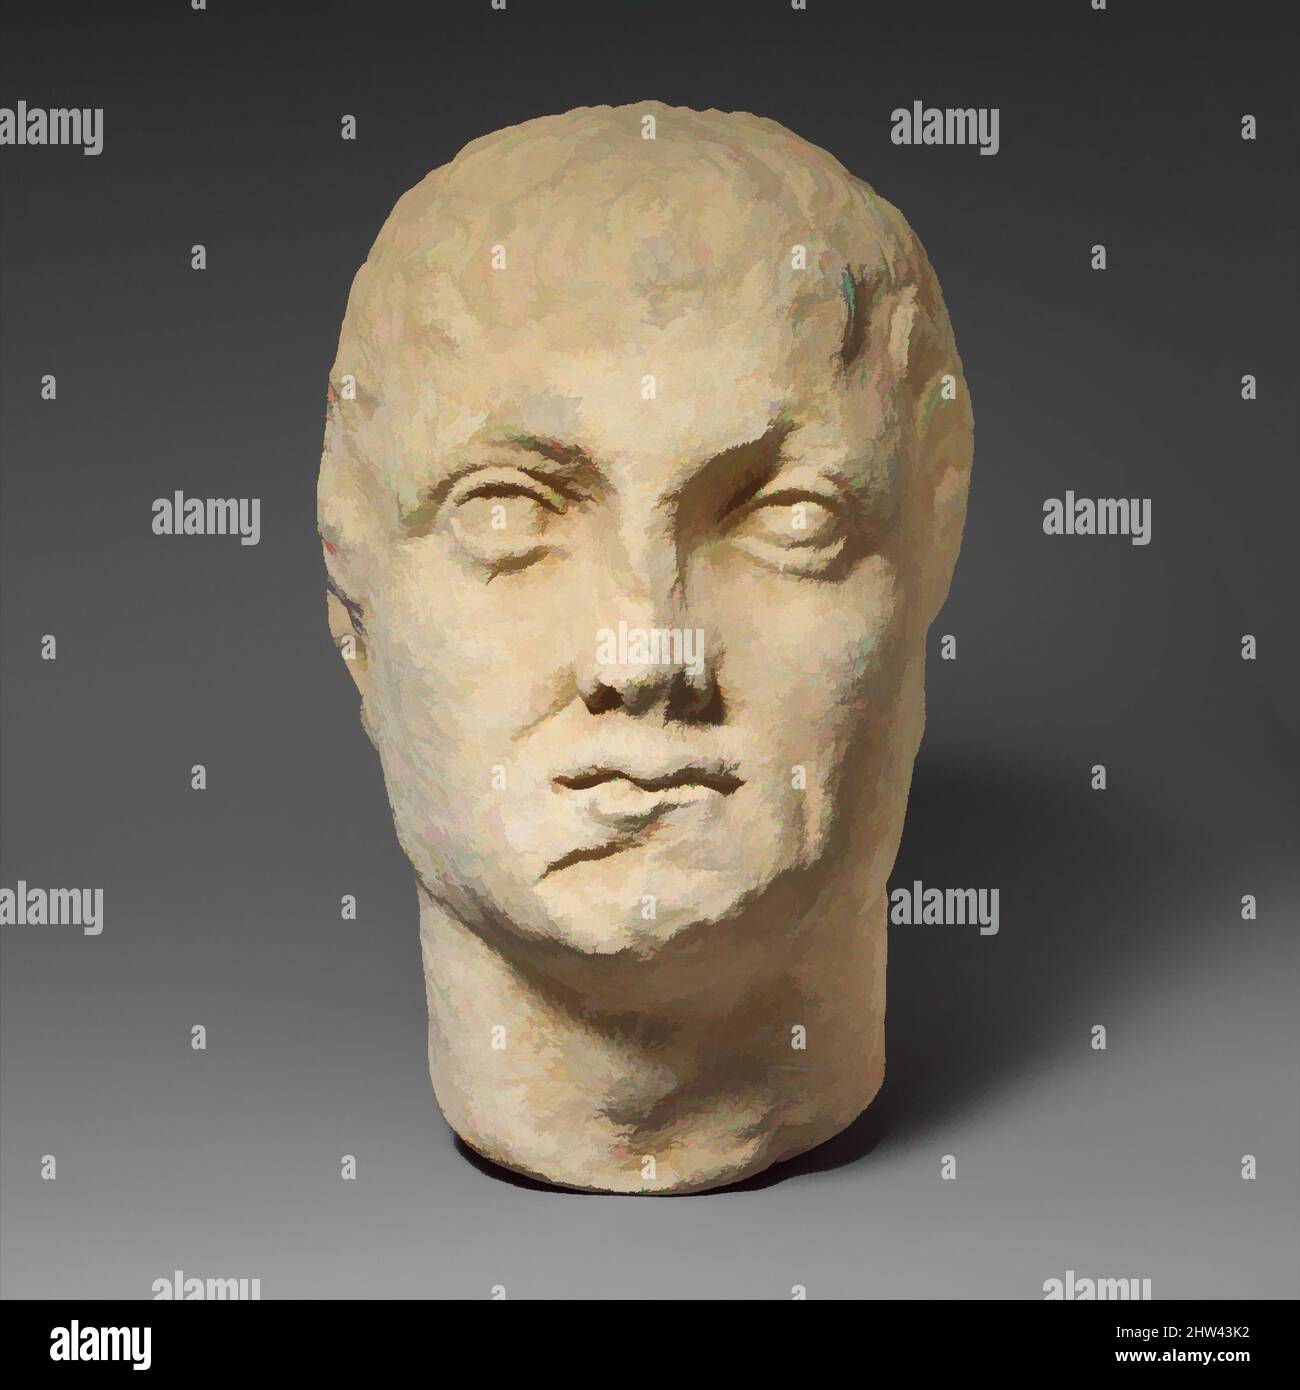 Arte ispirata da calcarea testa di un maschio senza guardaocchi, tardo ellenista, 1st secolo a.C., cipriota, calcare, Totale: 10 7/8 x 7 x 8 1/2 pollici (27,6 x 17,8 x 21,6 cm), scultura di pietra, la testa è girata leggermente alla sua sinistra. L'espressione facciale è severa. La sua età è indicata da, opere classiche modernizzate da Artotop con un tuffo di modernità. Forme, colore e valore, impatto visivo accattivante sulle emozioni artistiche attraverso la libertà delle opere d'arte in modo contemporaneo. Un messaggio senza tempo che persegue una nuova direzione selvaggiamente creativa. Artisti che si rivolgono al supporto digitale e creano l'NFT Artotop Foto Stock